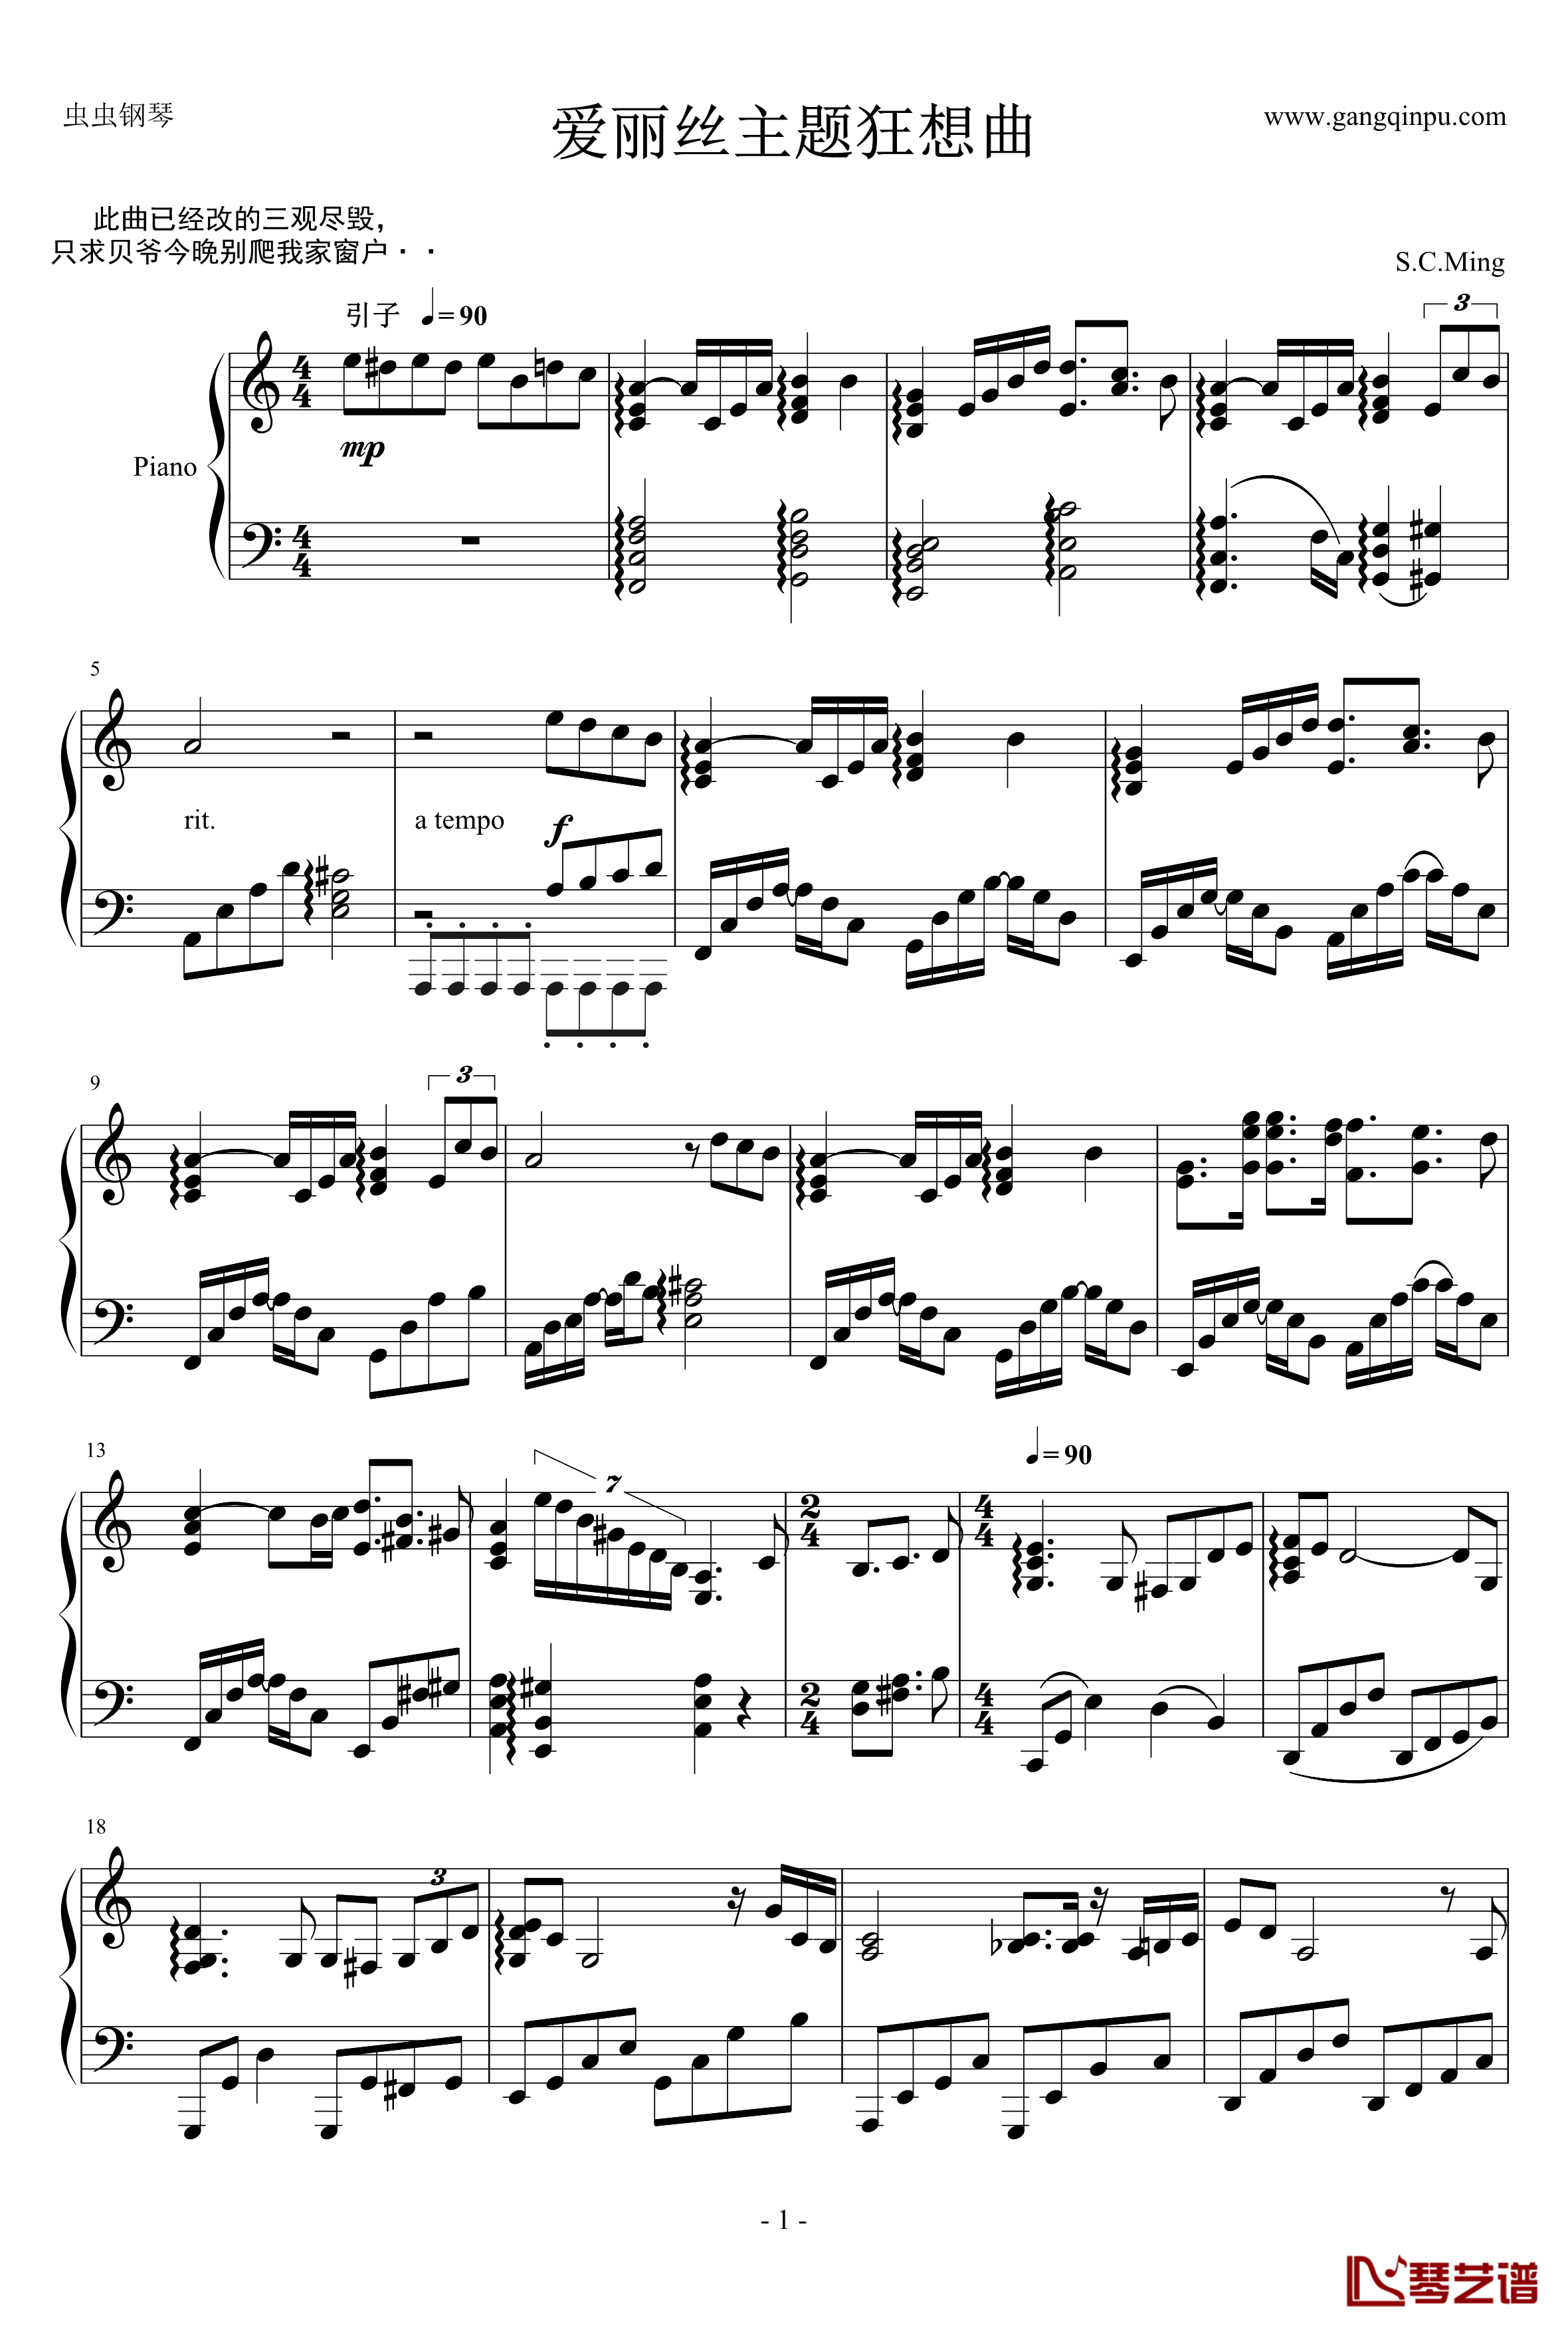 爱丽丝主题狂想曲钢琴谱-绝对的听觉冲击-贝多芬-beethoven1